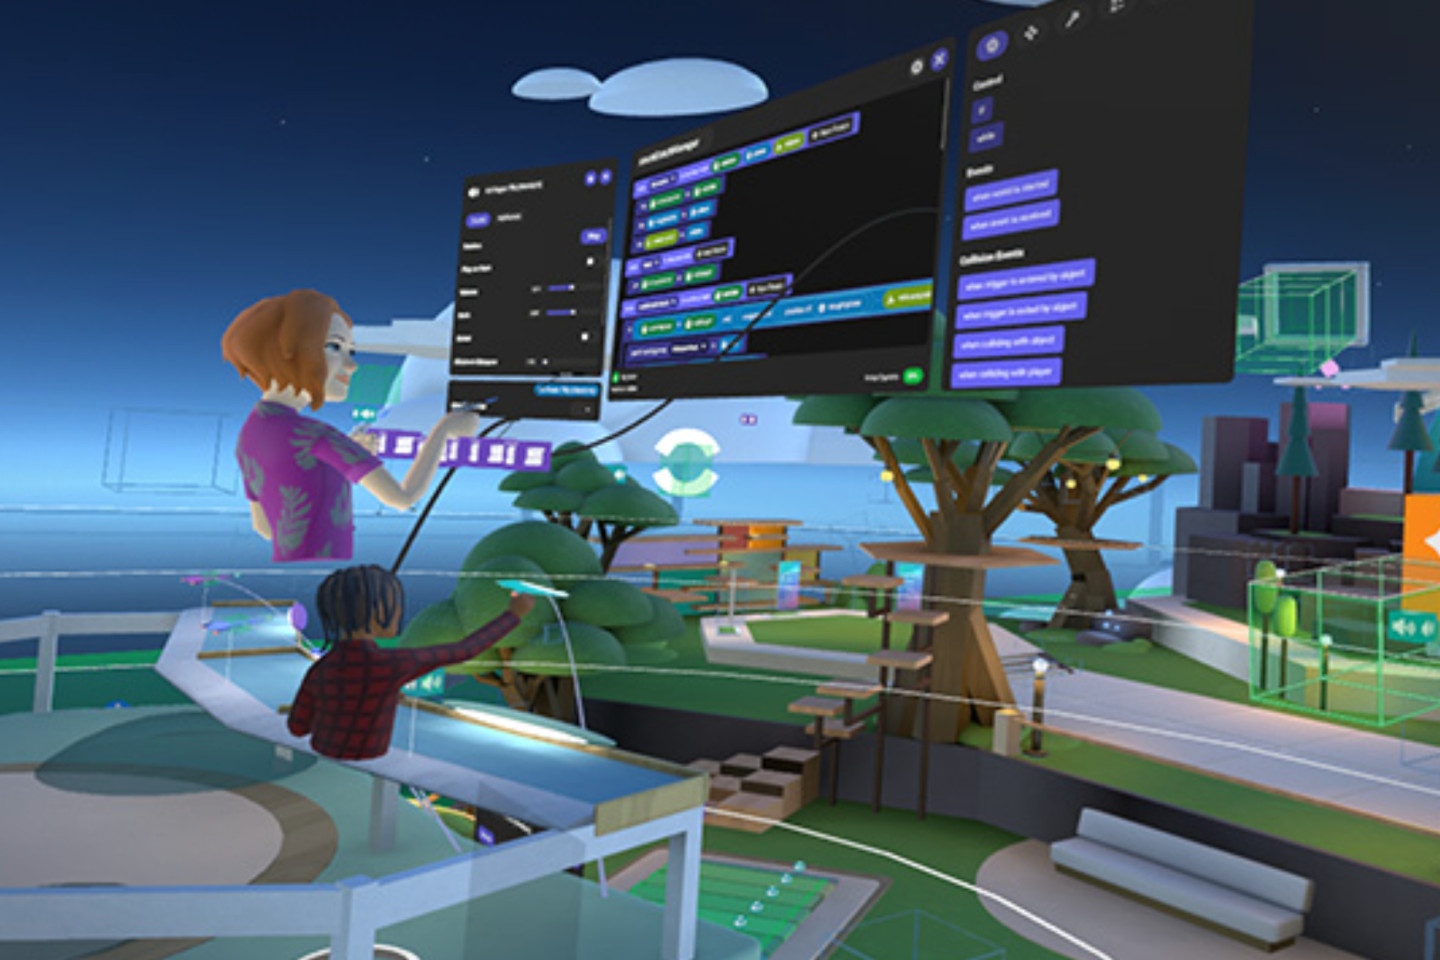 Онлайн-игра Horizon Worlds. Разработка Meta Platforms для Oculus Rift S и Oculus Quest 2